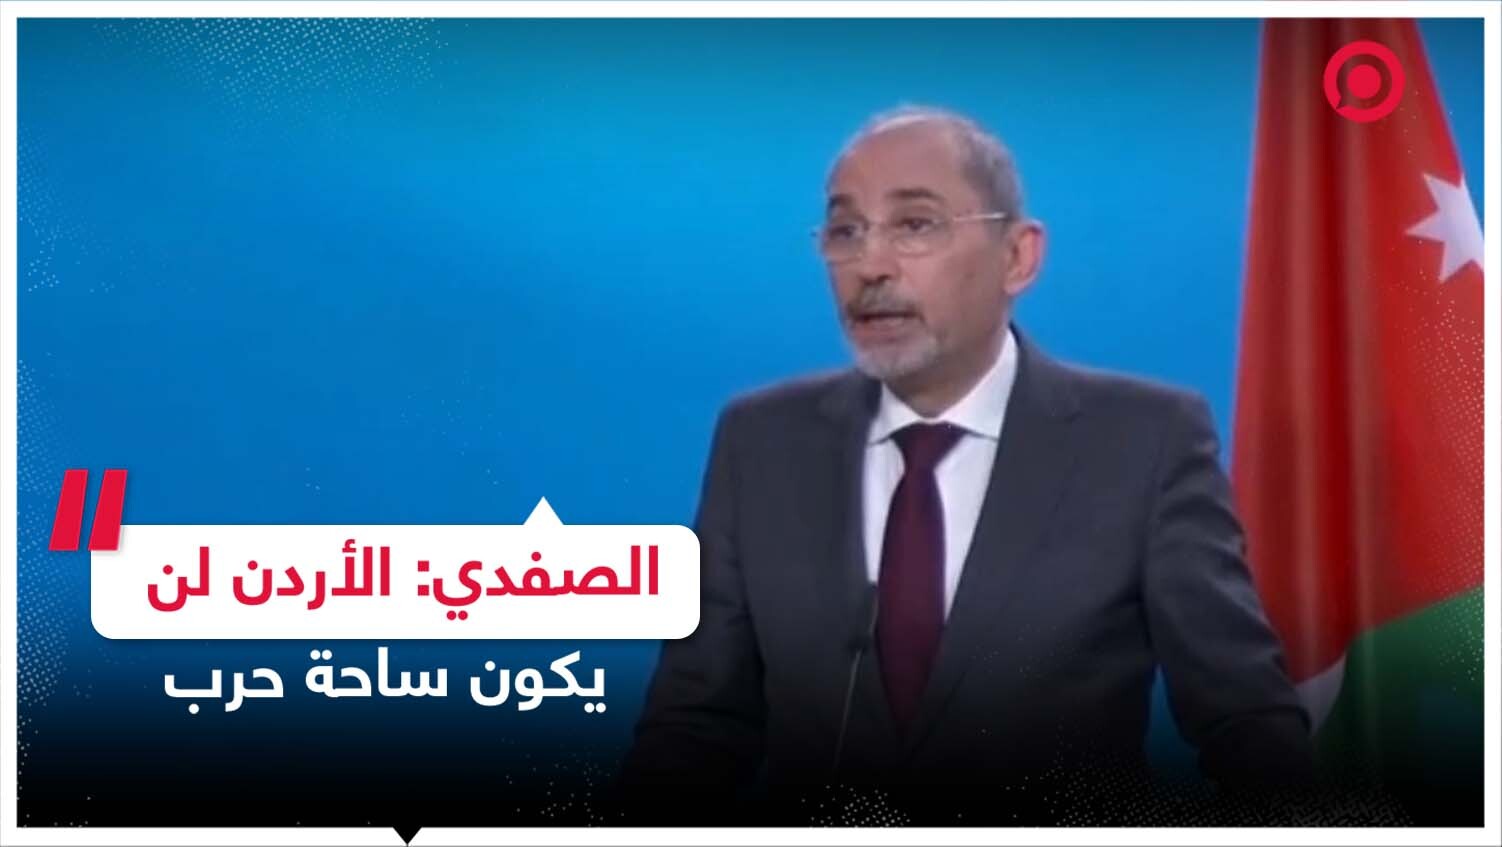 وزير الخارجية الأردني: سنتصدى لأي مسيّرات إسرائيلية كما تصدينا للمسيّرات الإيرانية